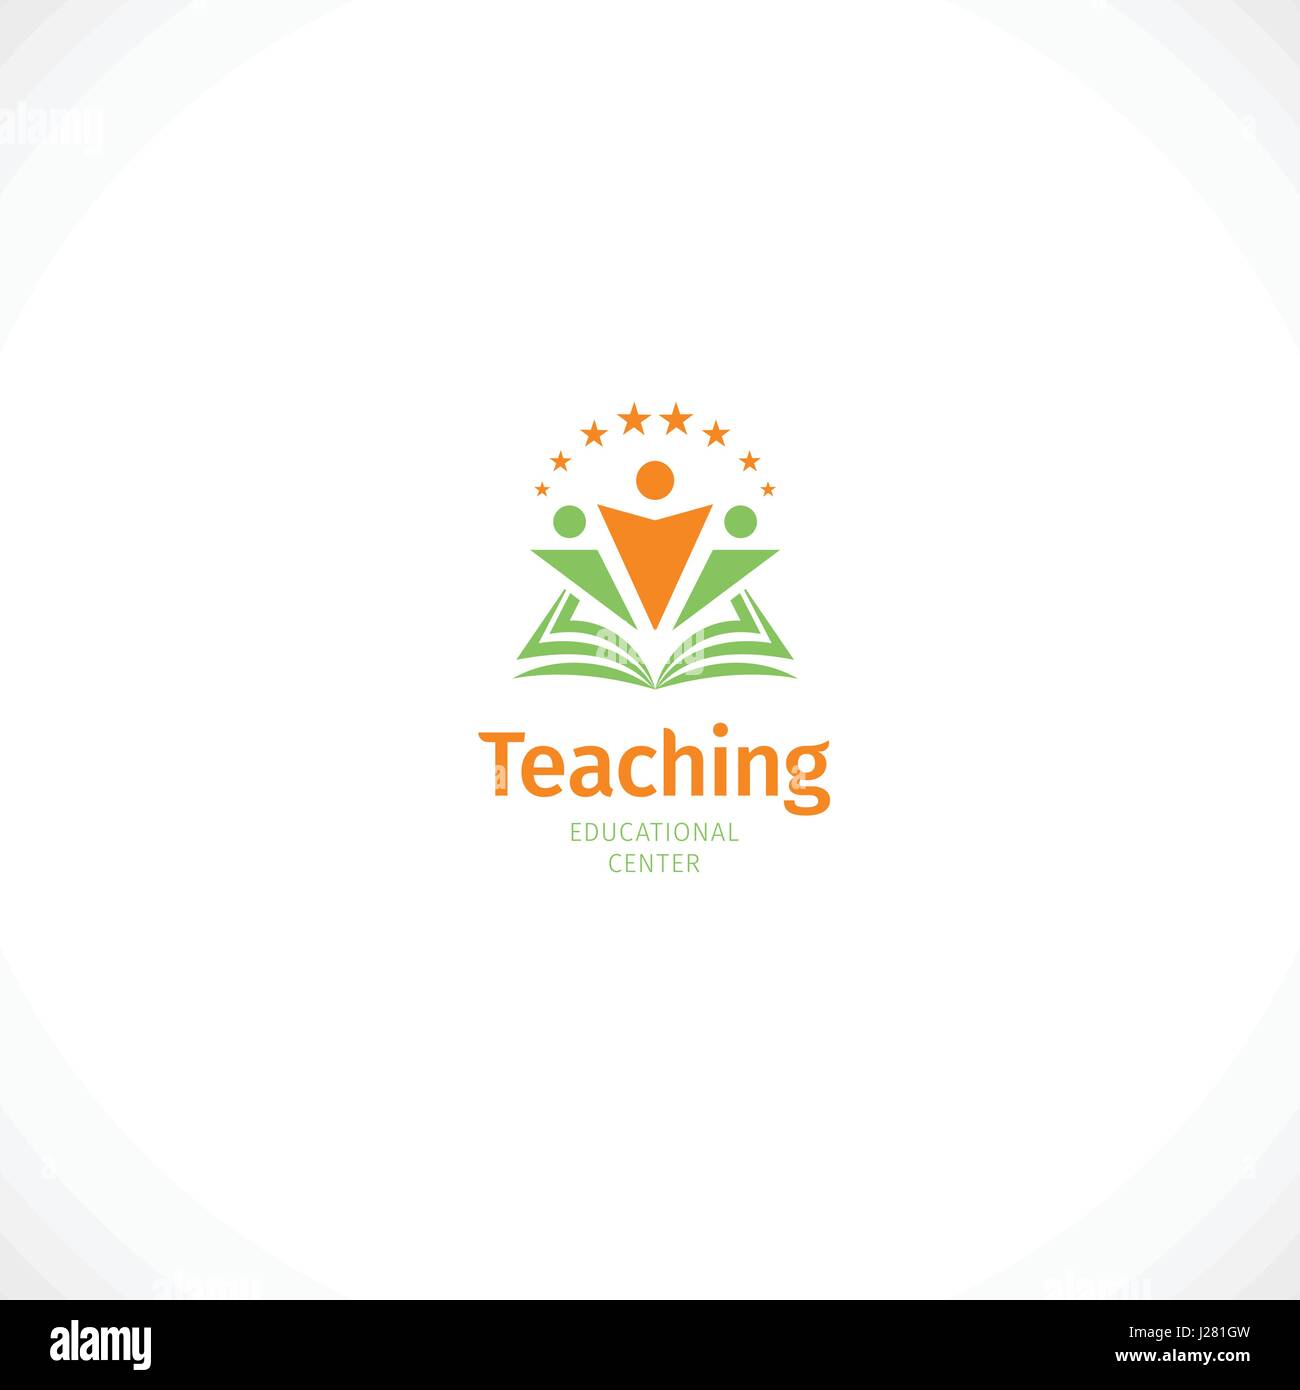 Isolierte abstrakt Grün und orange Farbe Buch mit Menschen Silhouetten Logo, Bildung Symbol mit Wort Lehre auf weißem Hintergrund Vektor Abbildung öffnen Stock Vektor